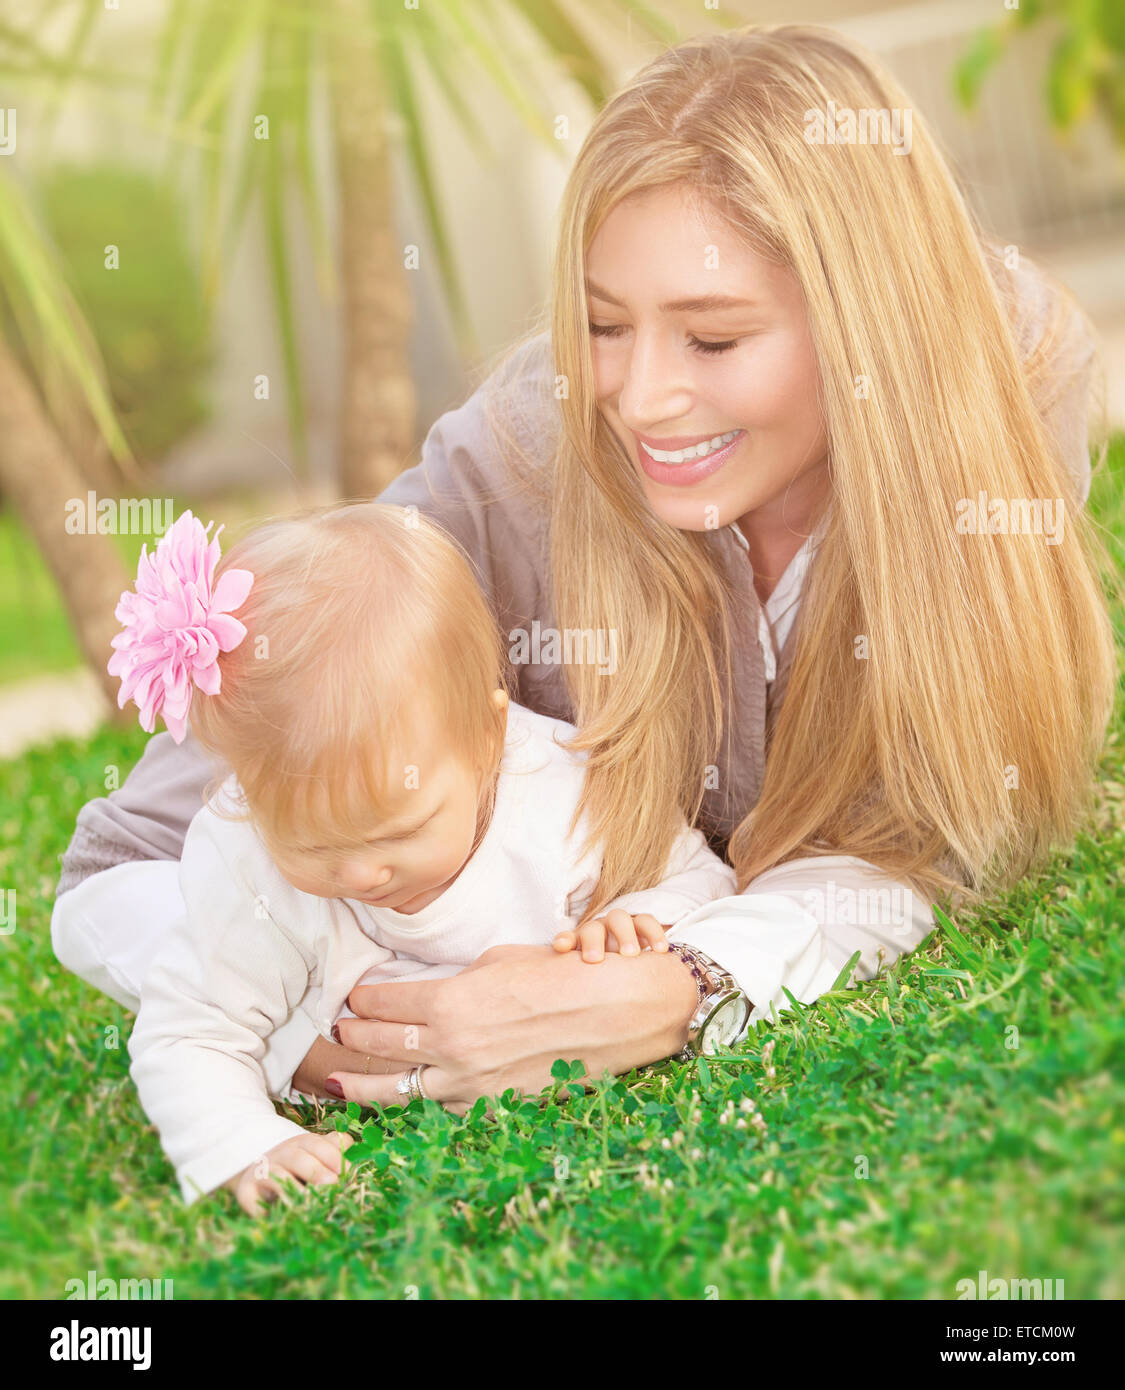 Cheerful young mère jouant avec son adorable petite fille dans le parc, allongé sur l'herbe verte fraîche, champ famille heureuse Banque D'Images